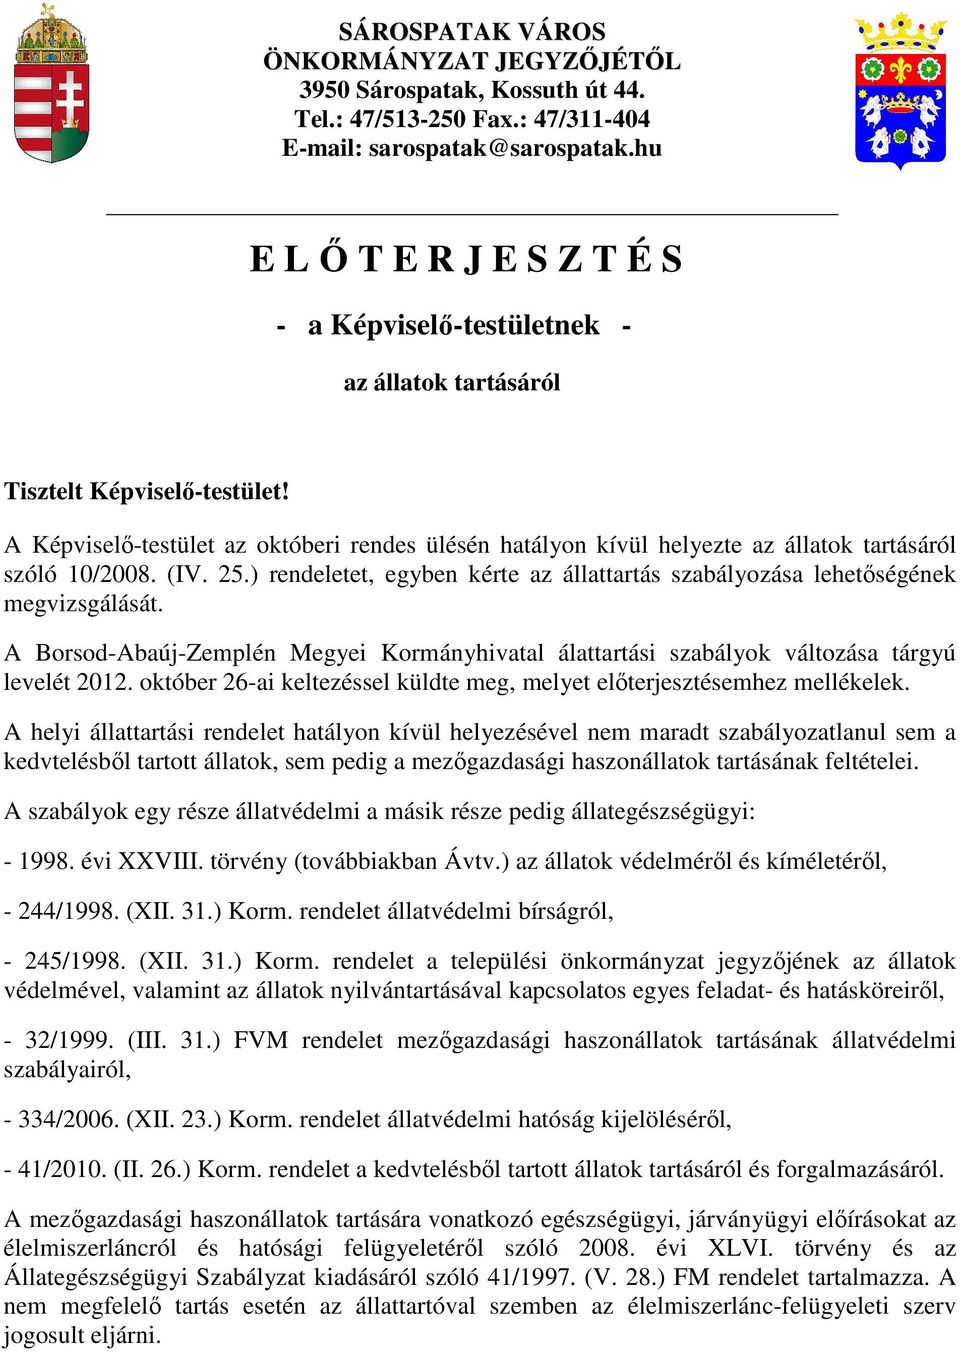 A Képviselı-testület az októberi rendes ülésén hatályon kívül helyezte az állatok tartásáról szóló 10/2008. (IV. 25.) rendeletet, egyben kérte az állattartás szabályozása lehetıségének megvizsgálását.